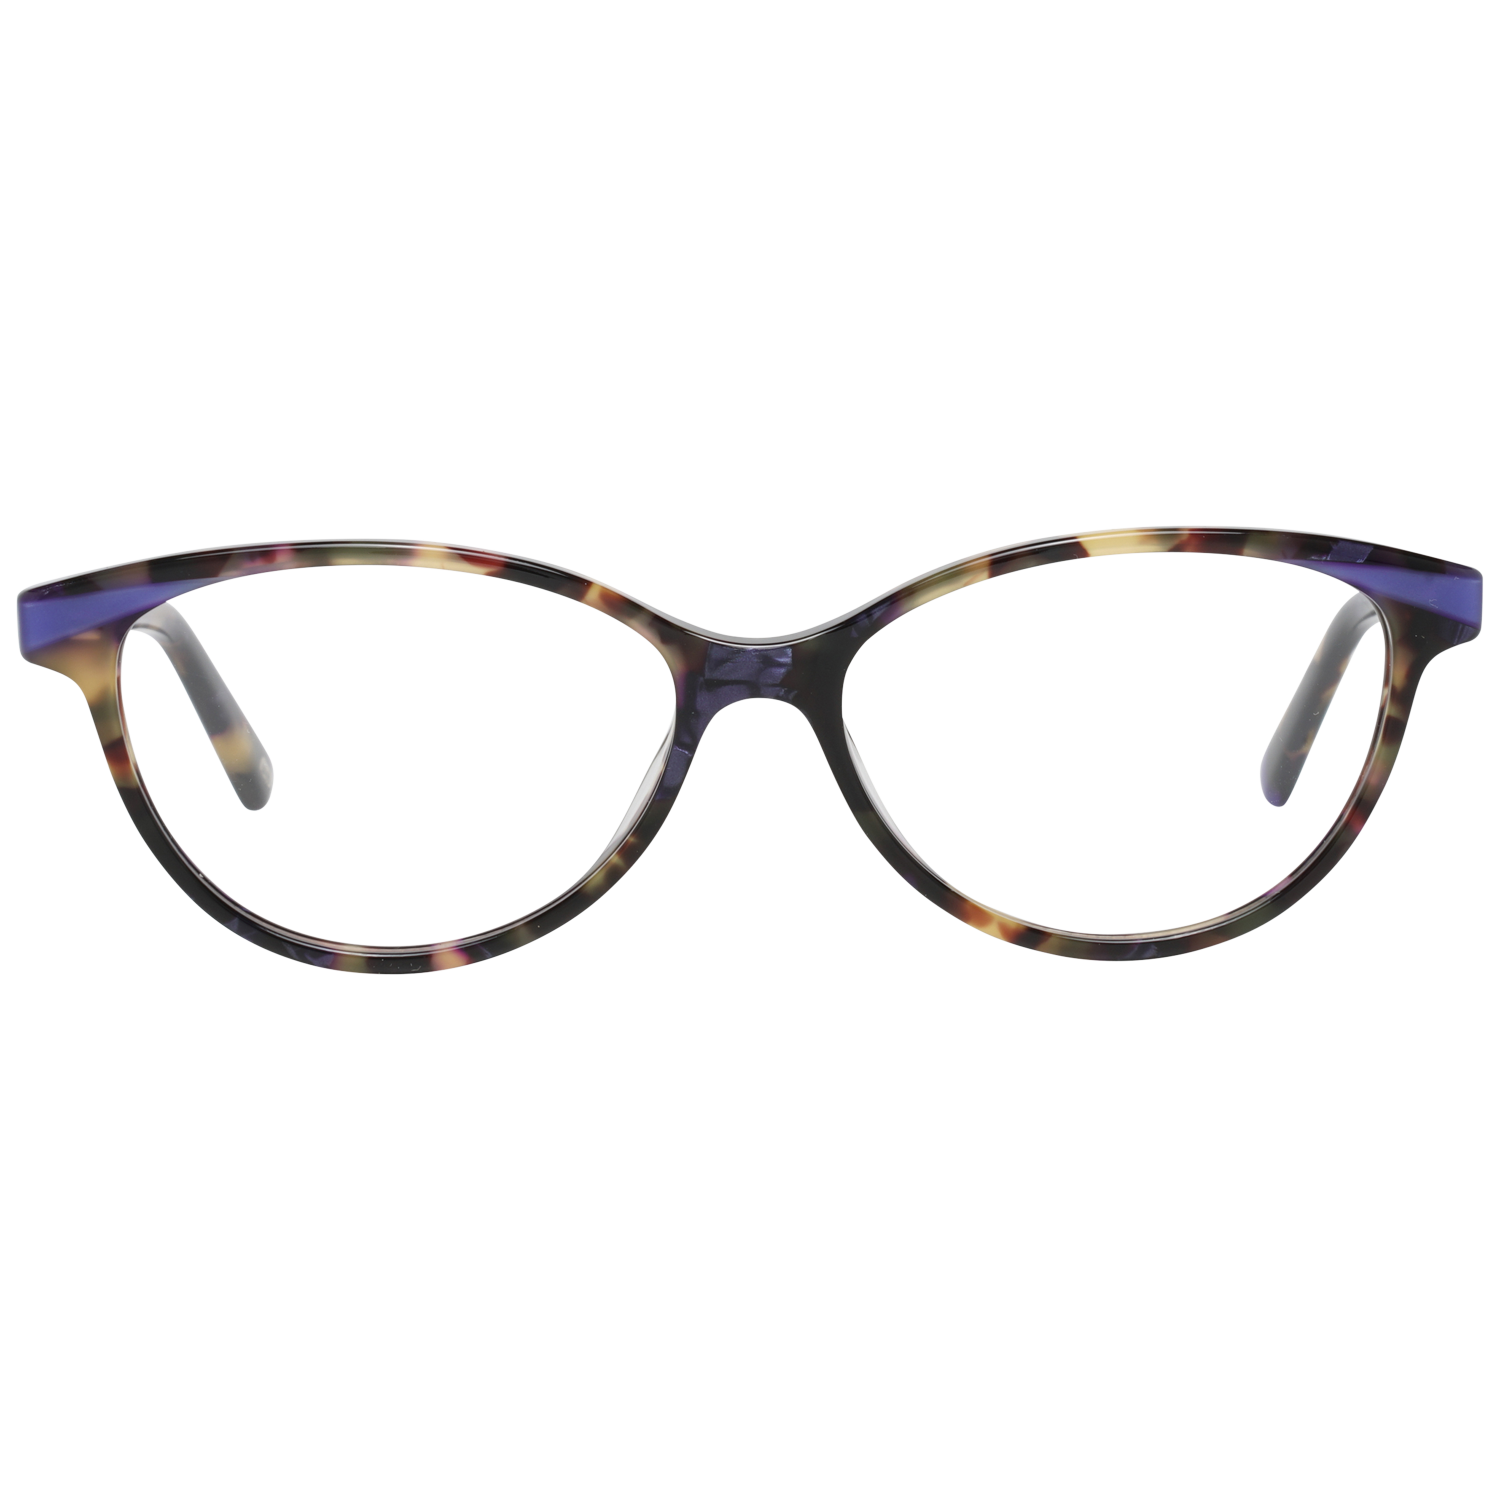 Web Frames Web Glasses Optical Frame WE5282 055 52 Eyeglasses Eyewear UK USA Australia 